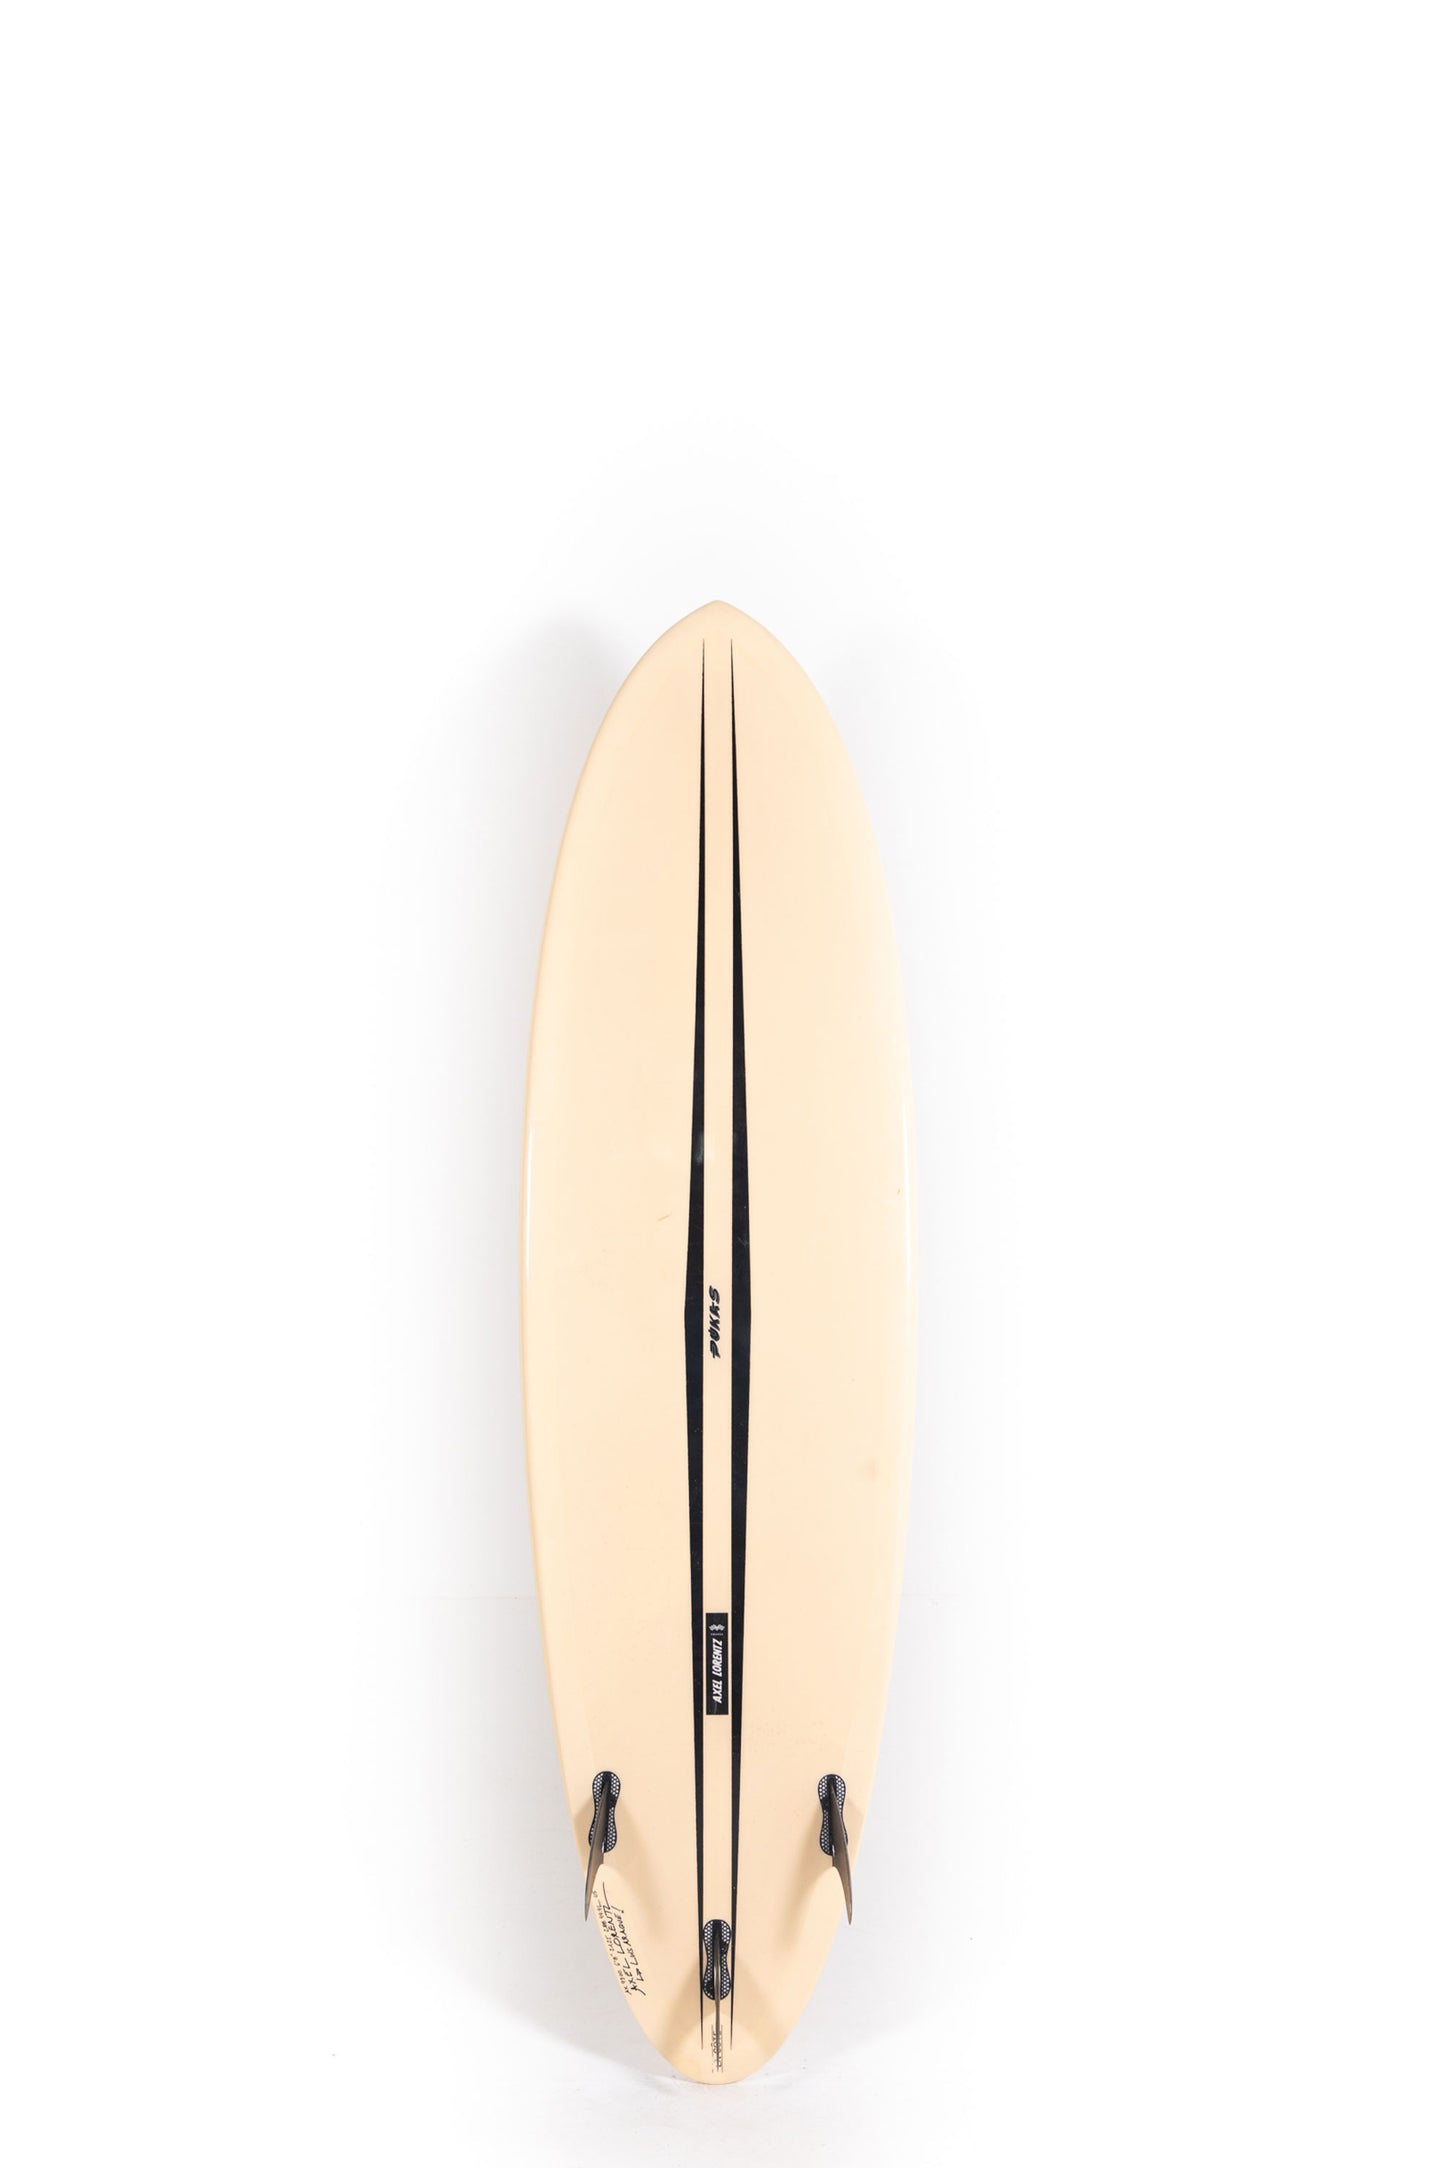 Pukas-Surf-Shop-Pukas-Surfboards-La-Cote-Axel-Lorentz-6_8_